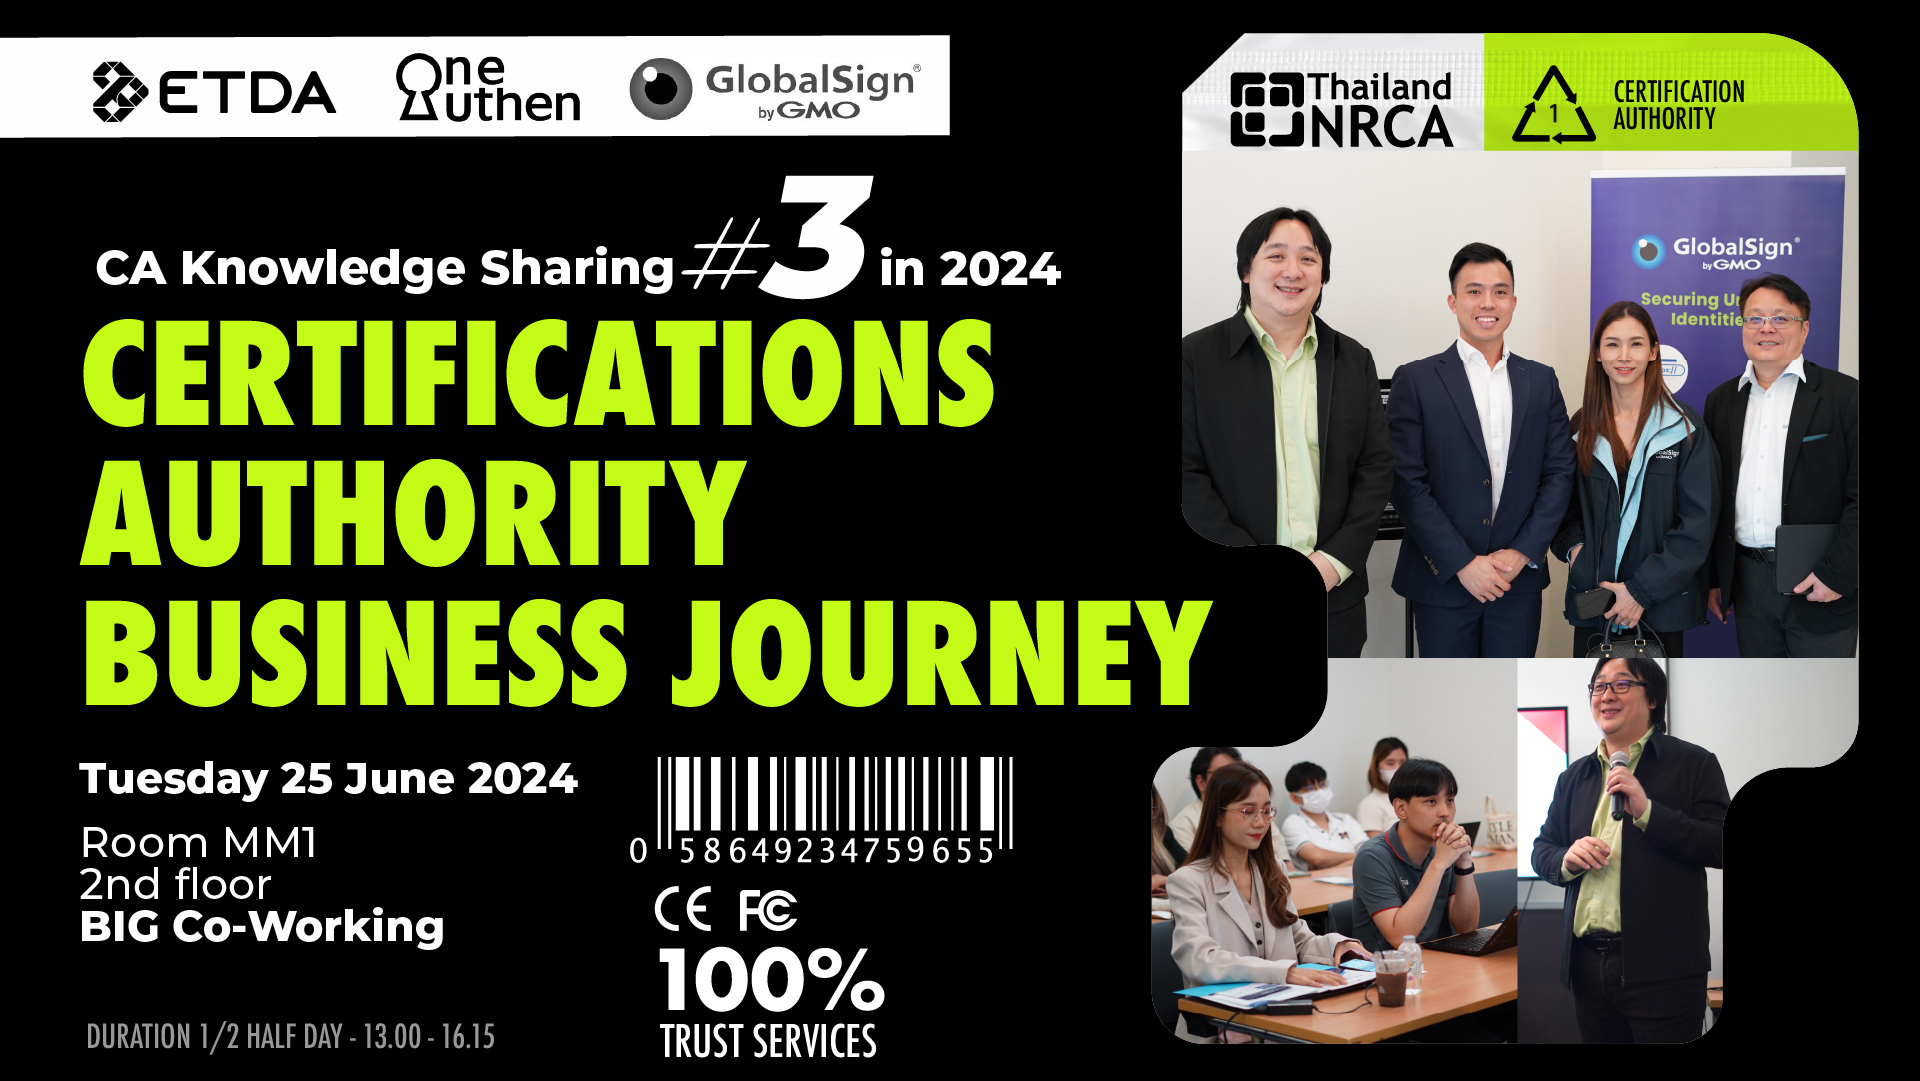 NRCA Thailand จัดกิจกรรม CA Knowledge Sharing ครั้งที่ 3   เวทีแลกเปลี่ยนความรู้ ถอดบทเรียนเกี่ยวกับธุรกิจ CA ในประเทศไทย 